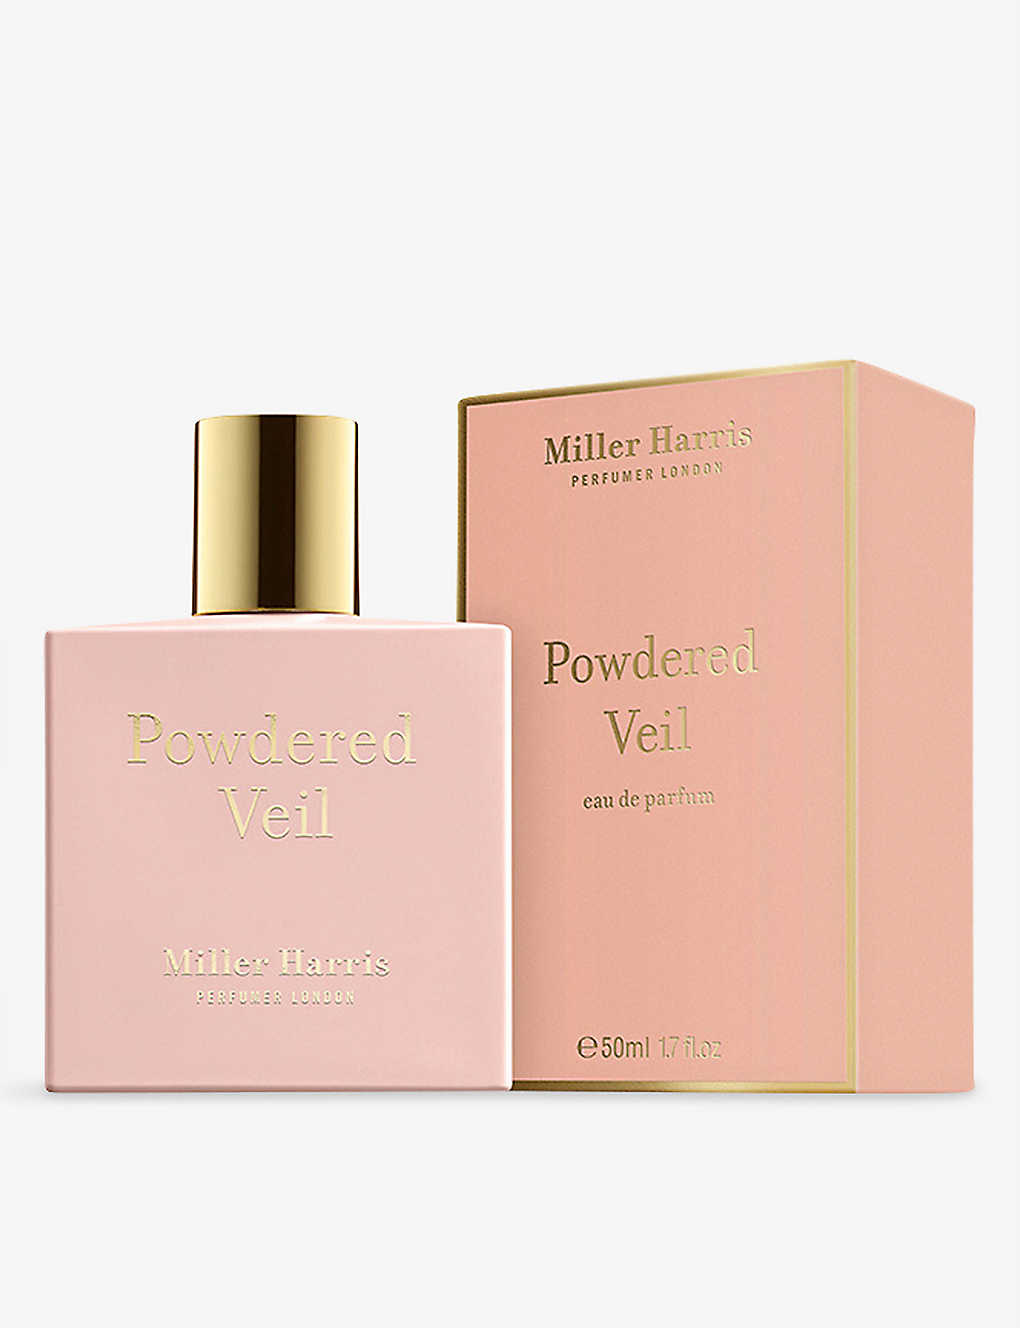 Miller Harris Powdered Veil Eau De Parfum 50ml